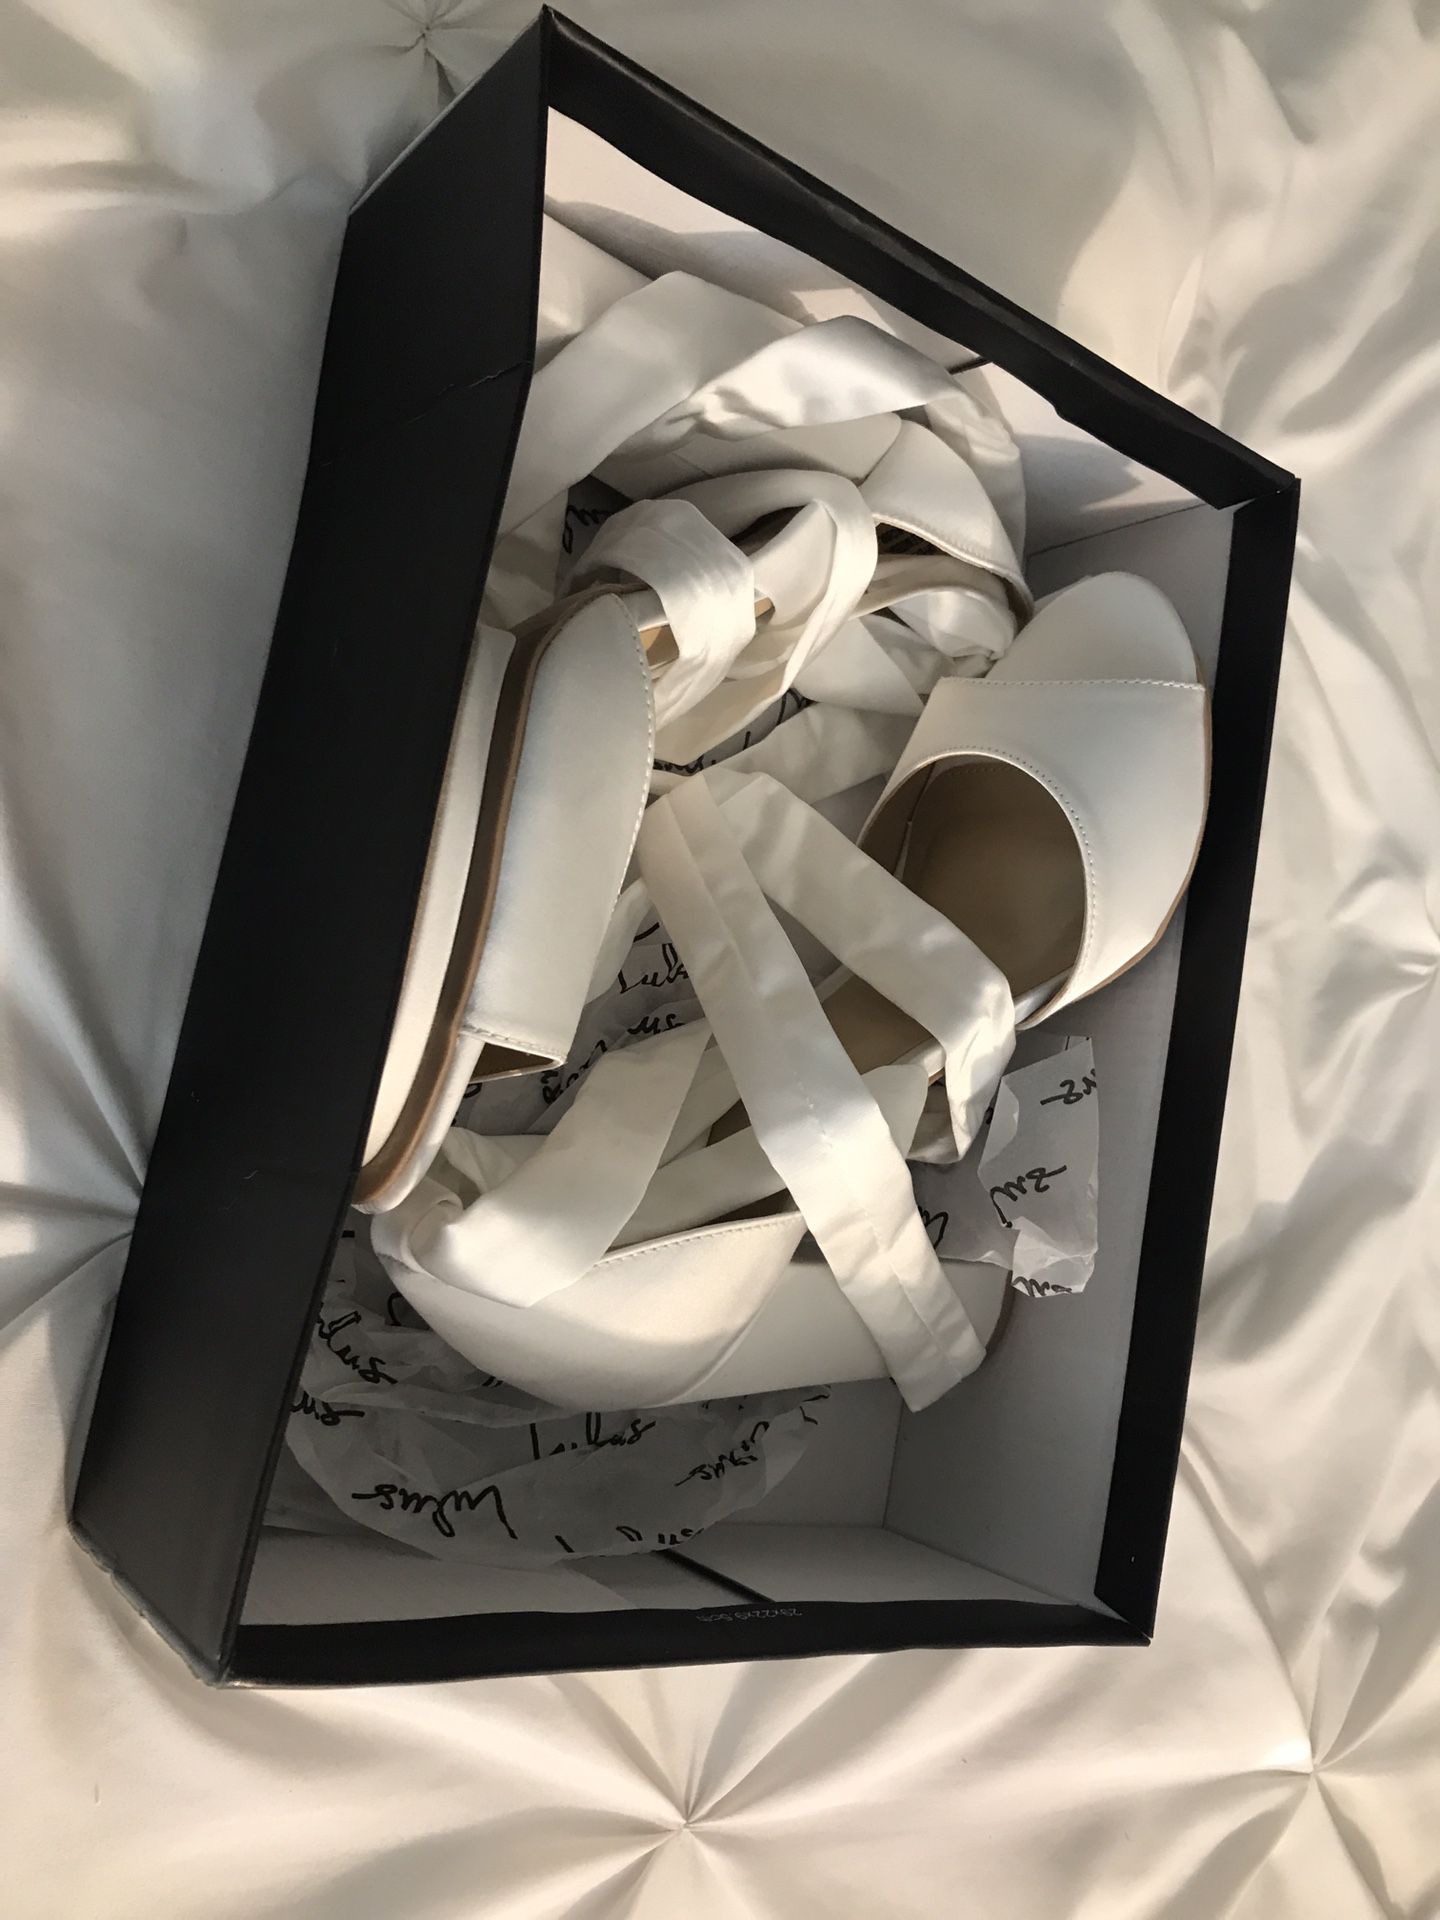 White wedding lace-up heels - size 8.5